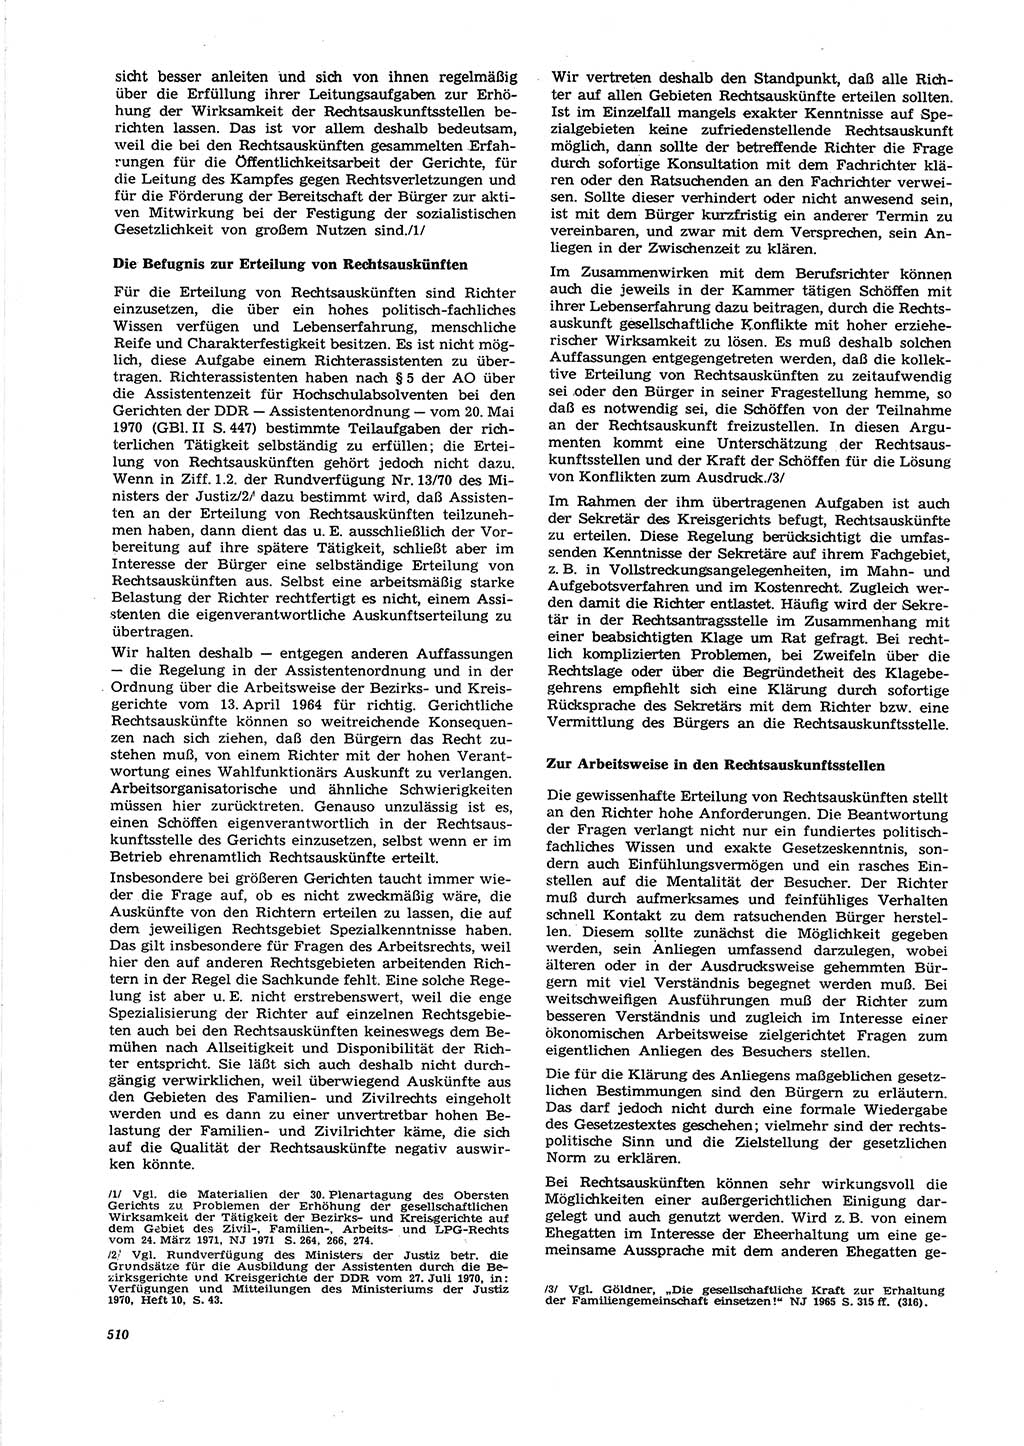 Neue Justiz (NJ), Zeitschrift für Recht und Rechtswissenschaft [Deutsche Demokratische Republik (DDR)], 27. Jahrgang 1973, Seite 510 (NJ DDR 1973, S. 510)